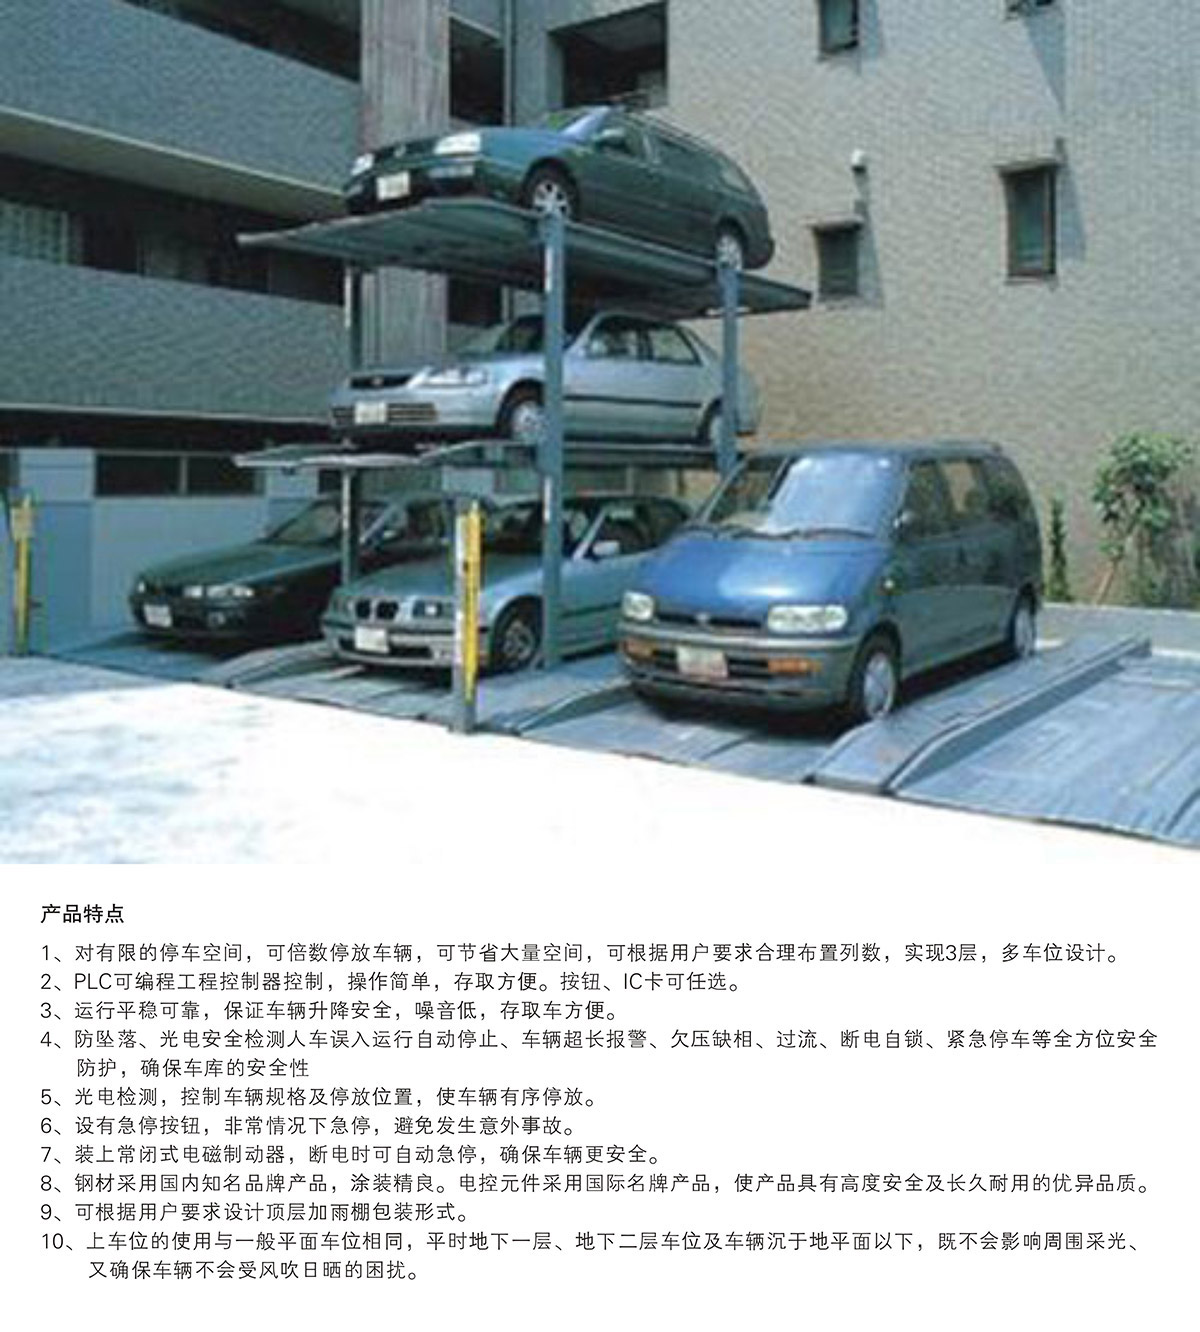 智能停车PJS3D2三层地坑简易升降立体车库设备产品特点.jpg